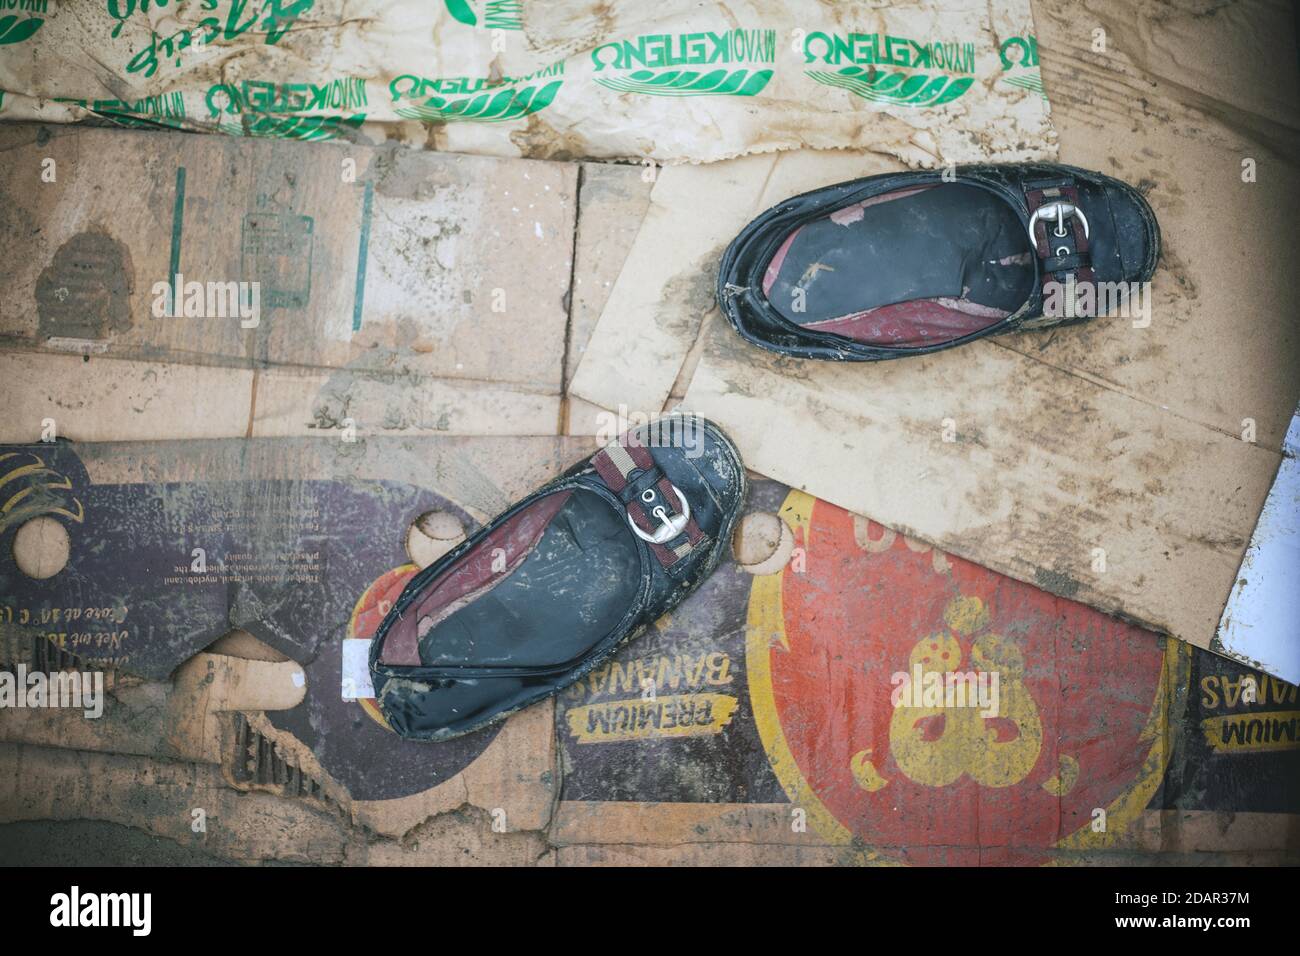 Scarpe da donna in tenda, scarpe di rifugiati, campo Idomeni, Grecia Foto Stock